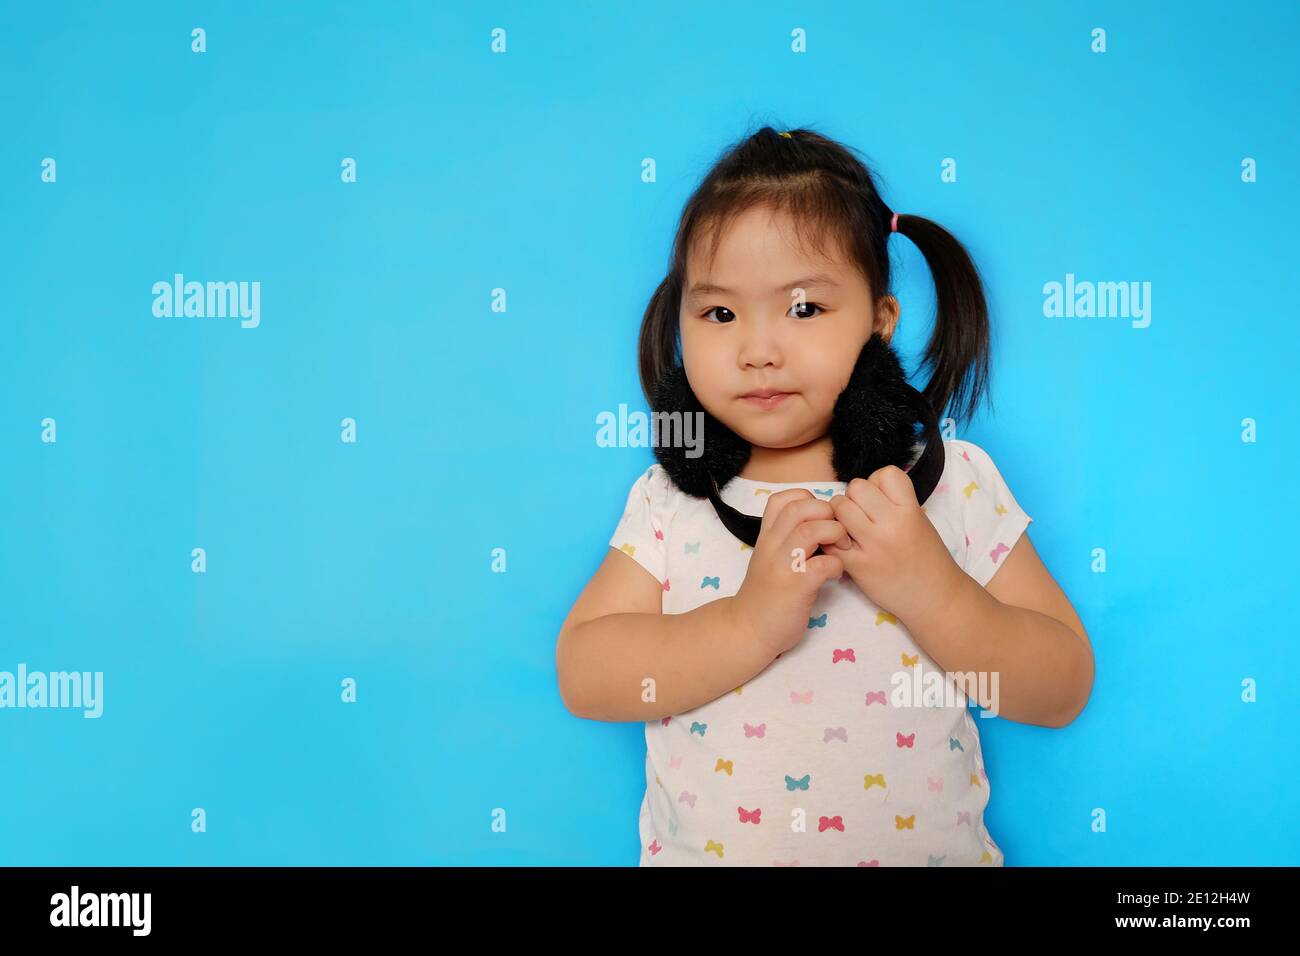 Une adorable jeune fille asiatique à l'écoute de musiques avec son casque doux noir, souriant, amusant. Fond bleu clair Uni. Banque D'Images